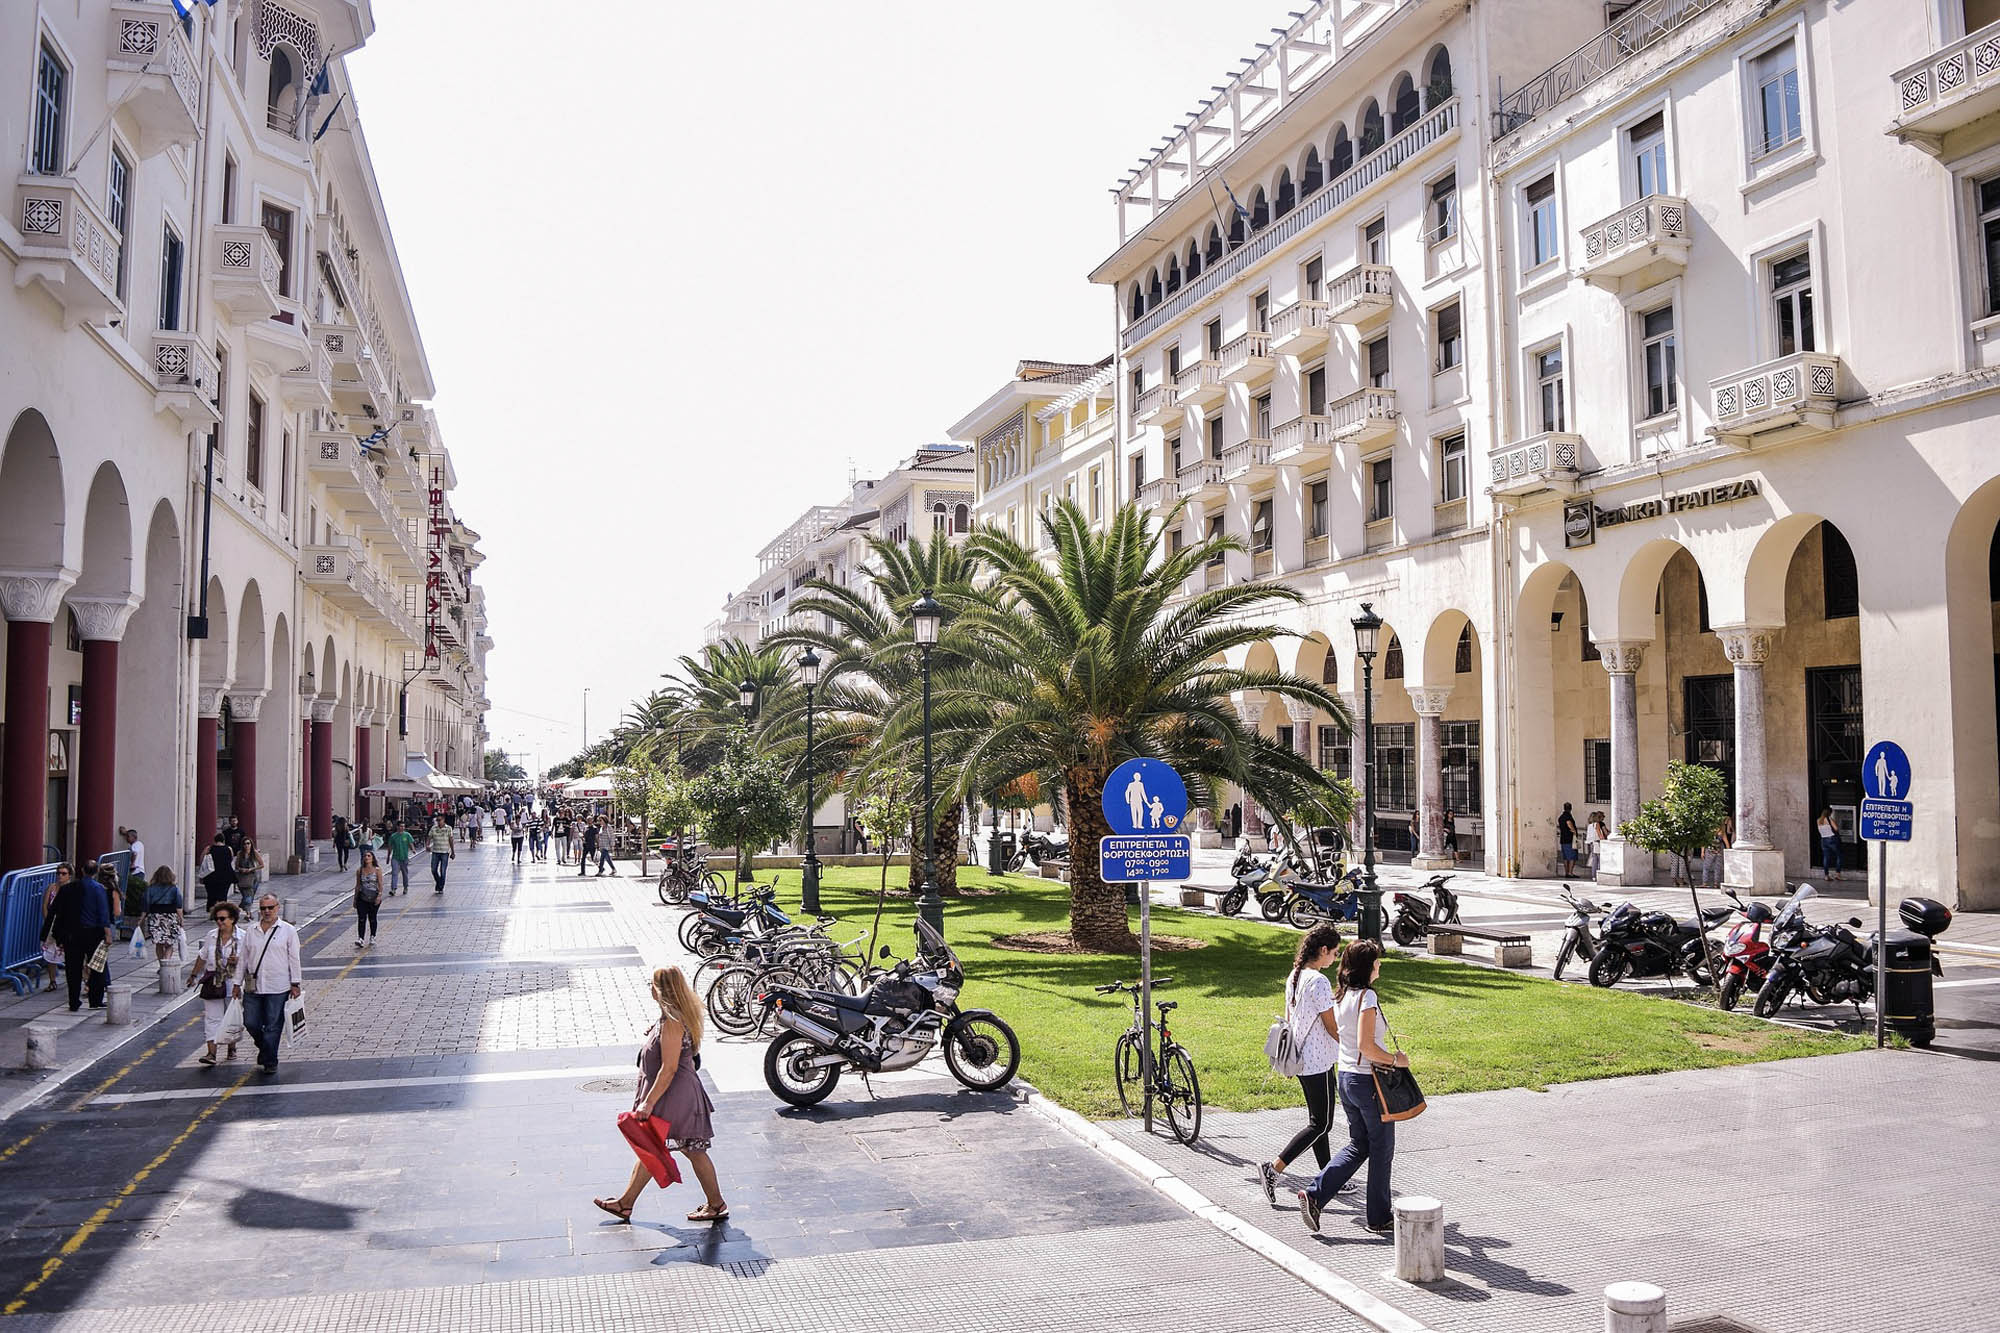 widok na nowoczesną ulice w salonikach, piękne budynki i palmy